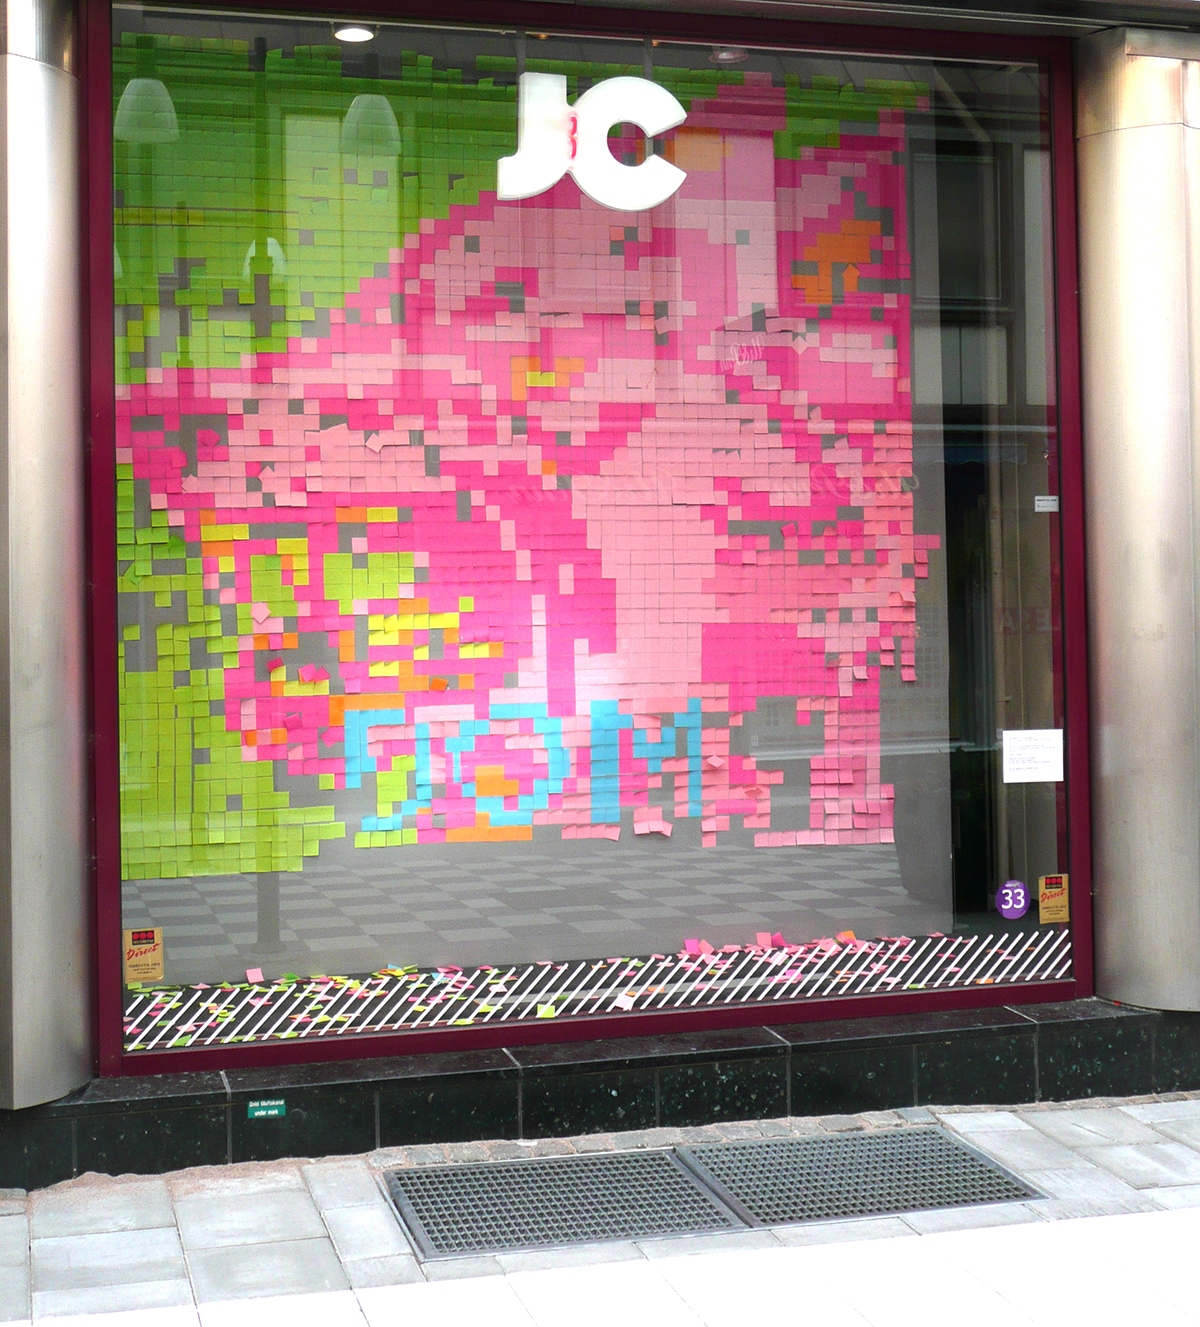 Butiken JCs skyltfönster har blivit utsmyckad med rosa, ljusrosa, gröna, gula samt orangea post-it lappa. Lapparna bildar porträtt som sakta börjar upplösas då limmet släpper och lappen faller till marken.